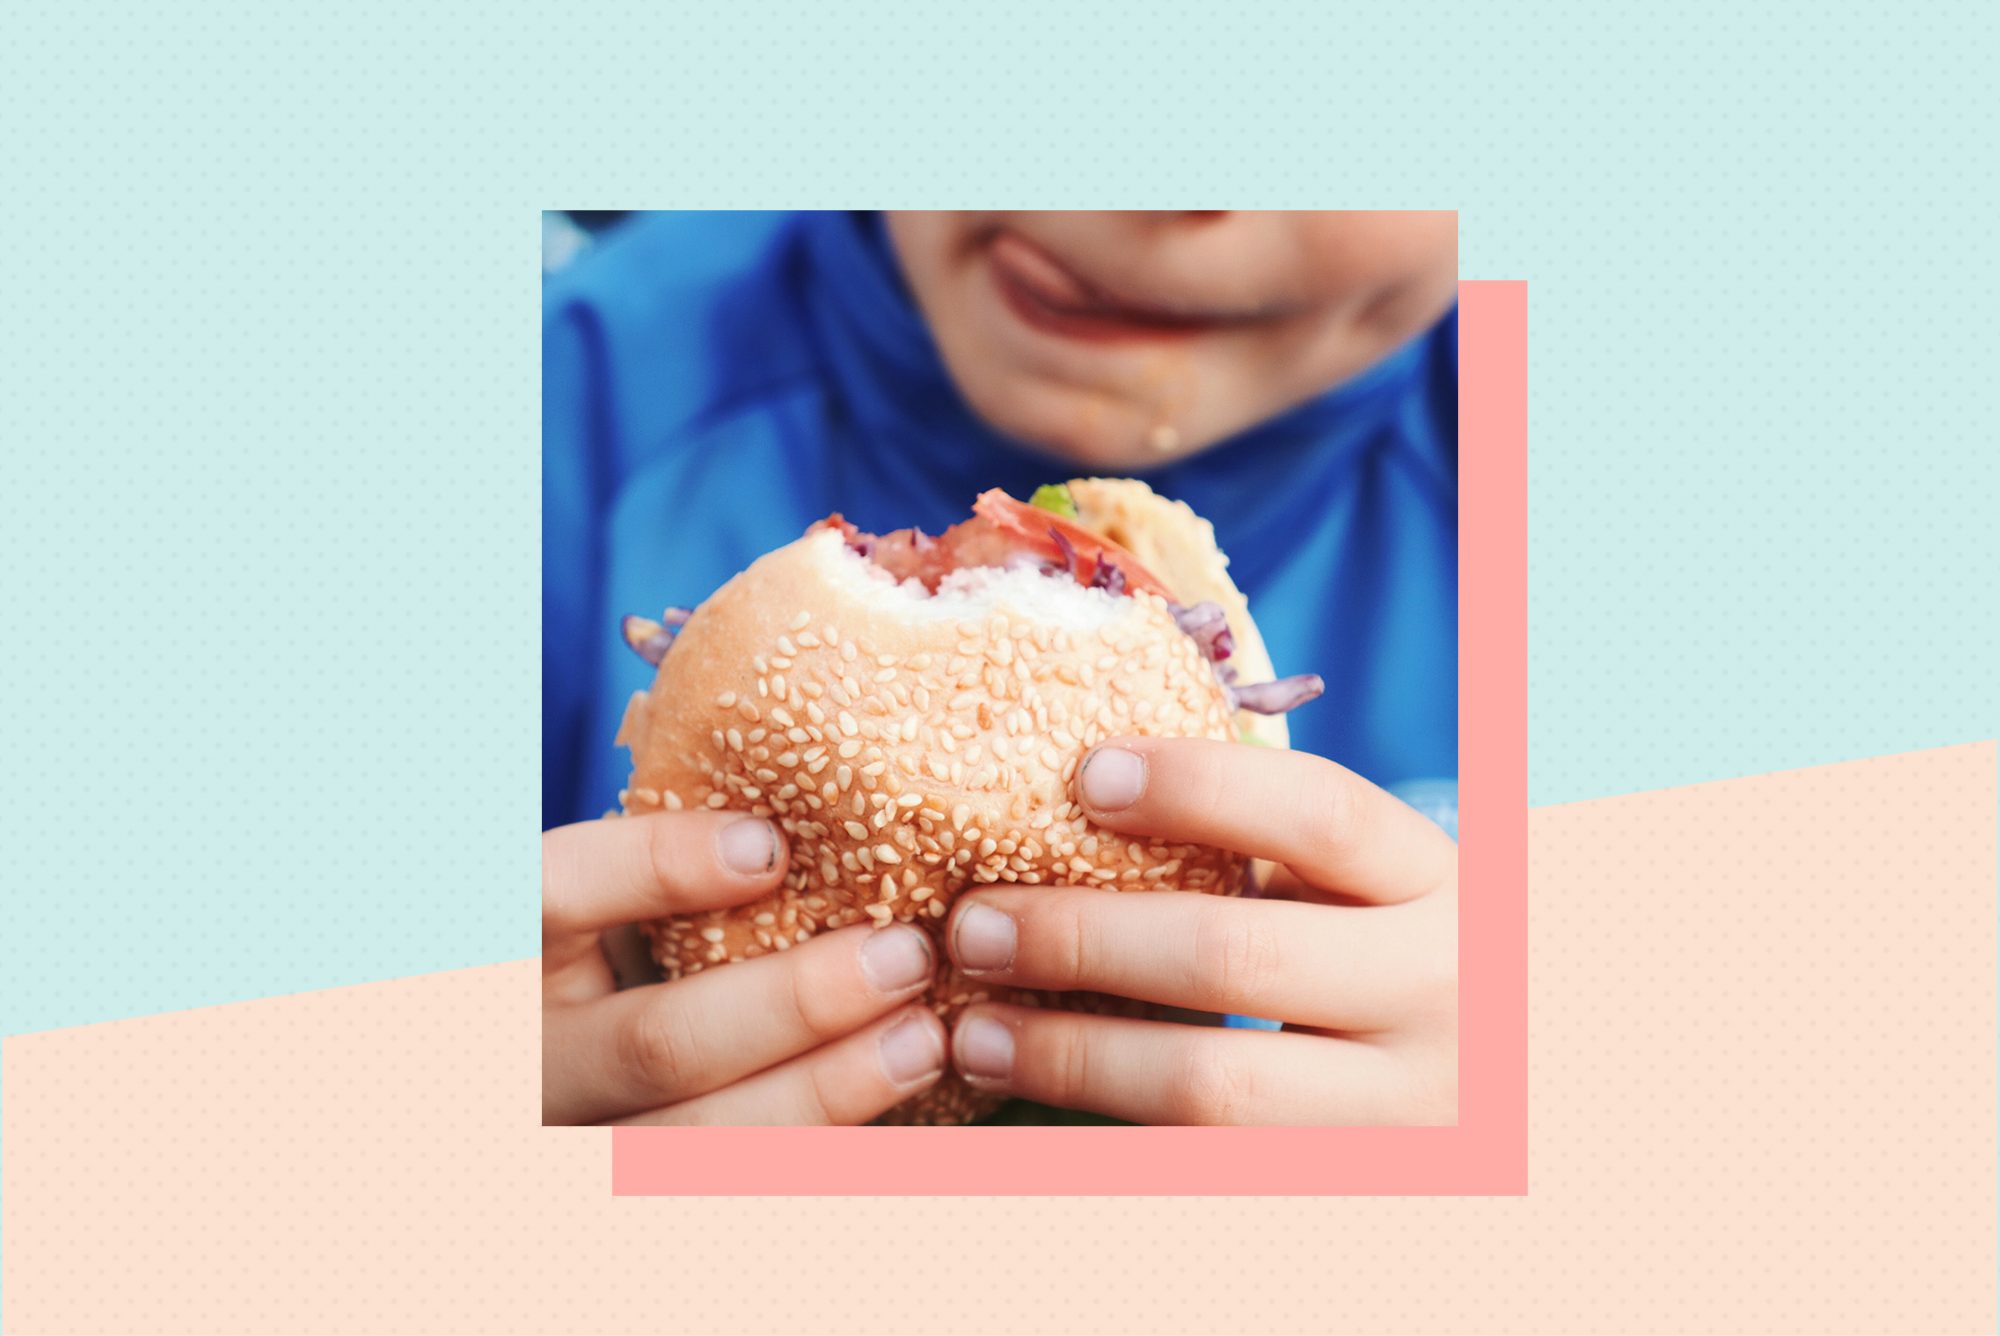 La hamburguesa imposible llega a los almuerzos escolares: estos son los datos nutricionales que los padres deben conocer